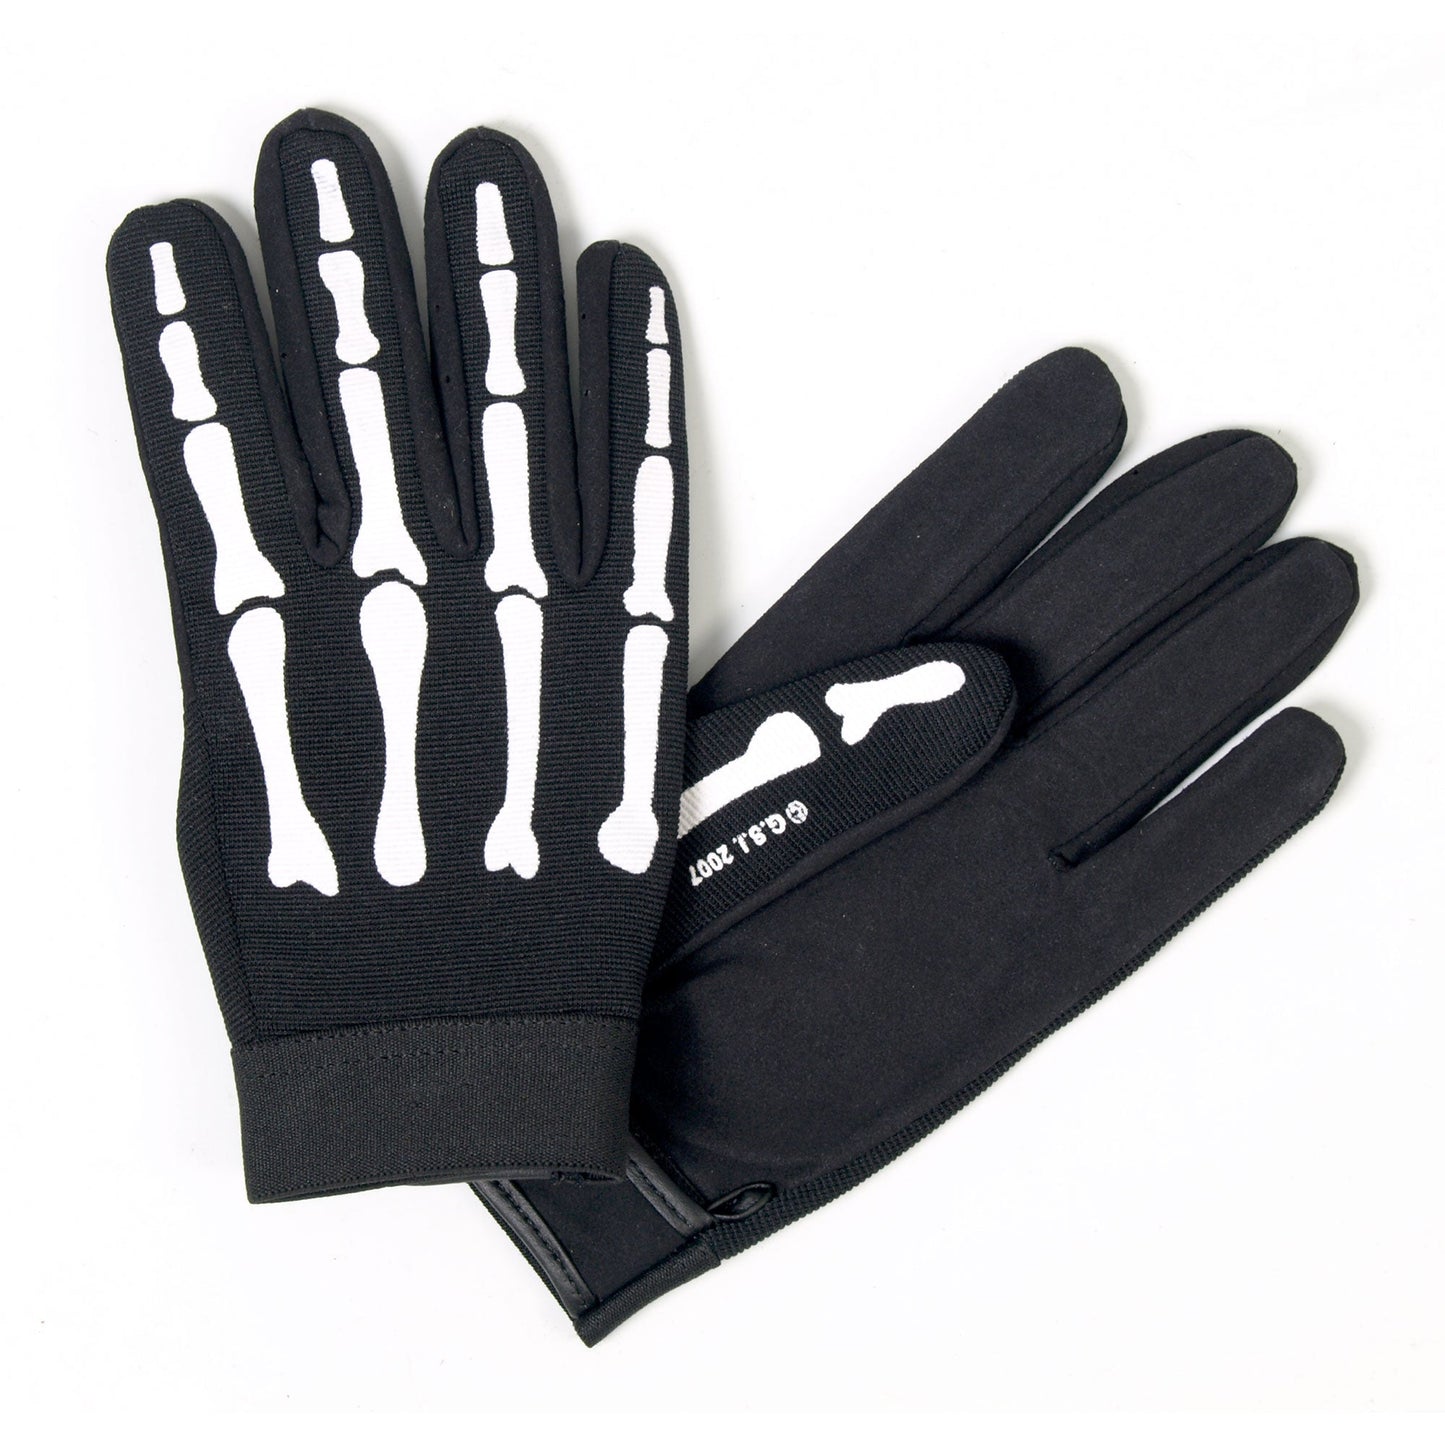 Skeleton Mechanics Gloves